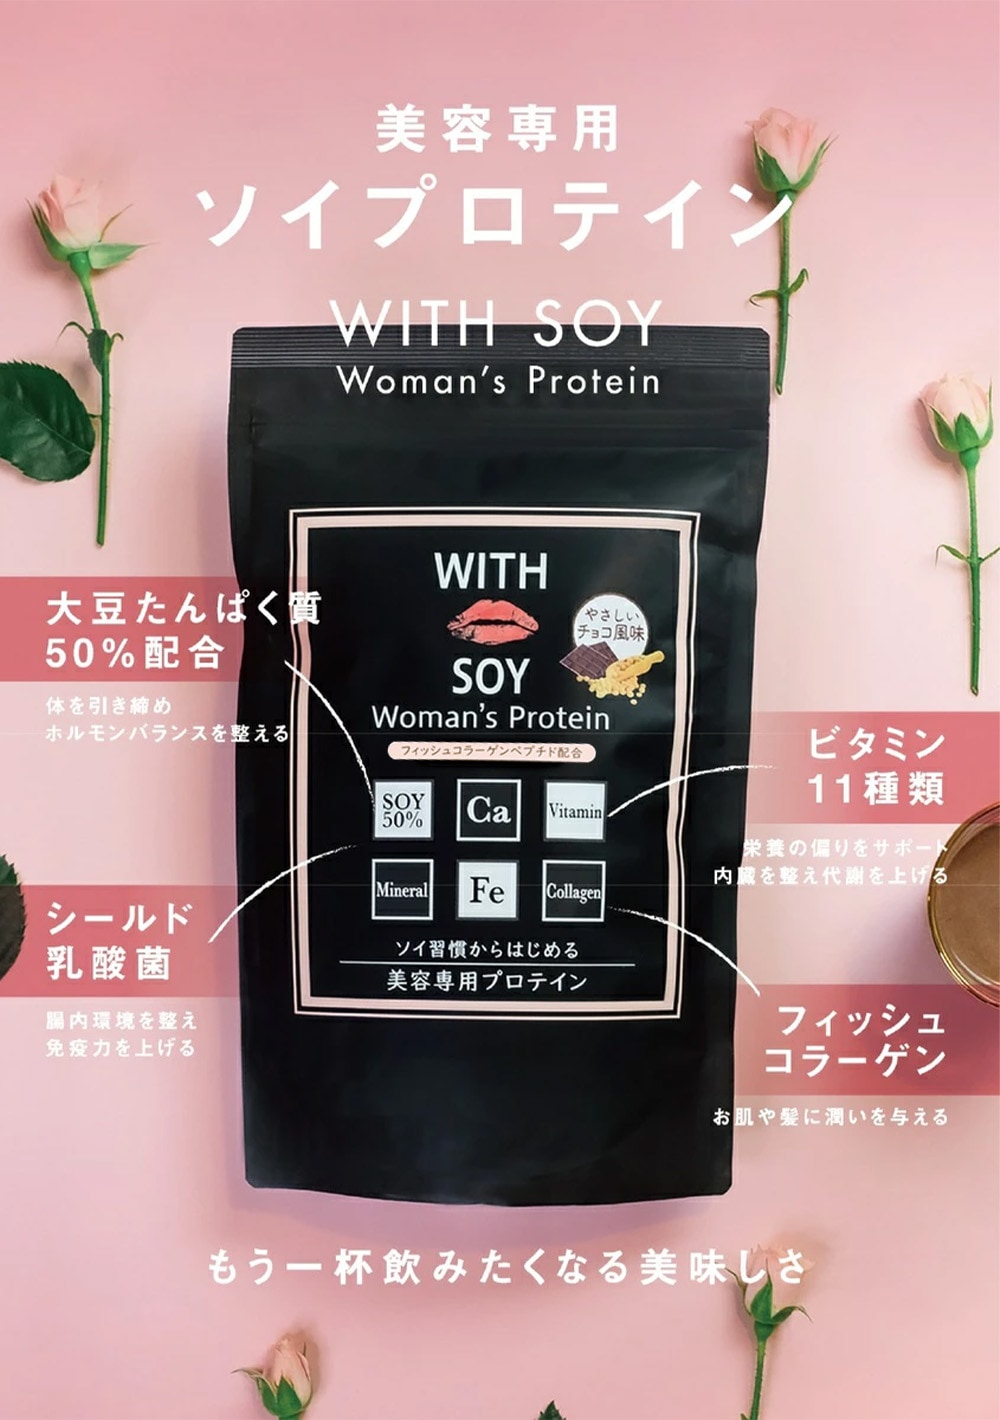 ウィズソイ ウーマンズプロテイン 20g×7個 チョコレート味 WITH SOY Woman’s Protein 美容成分入り ソイプロテイン